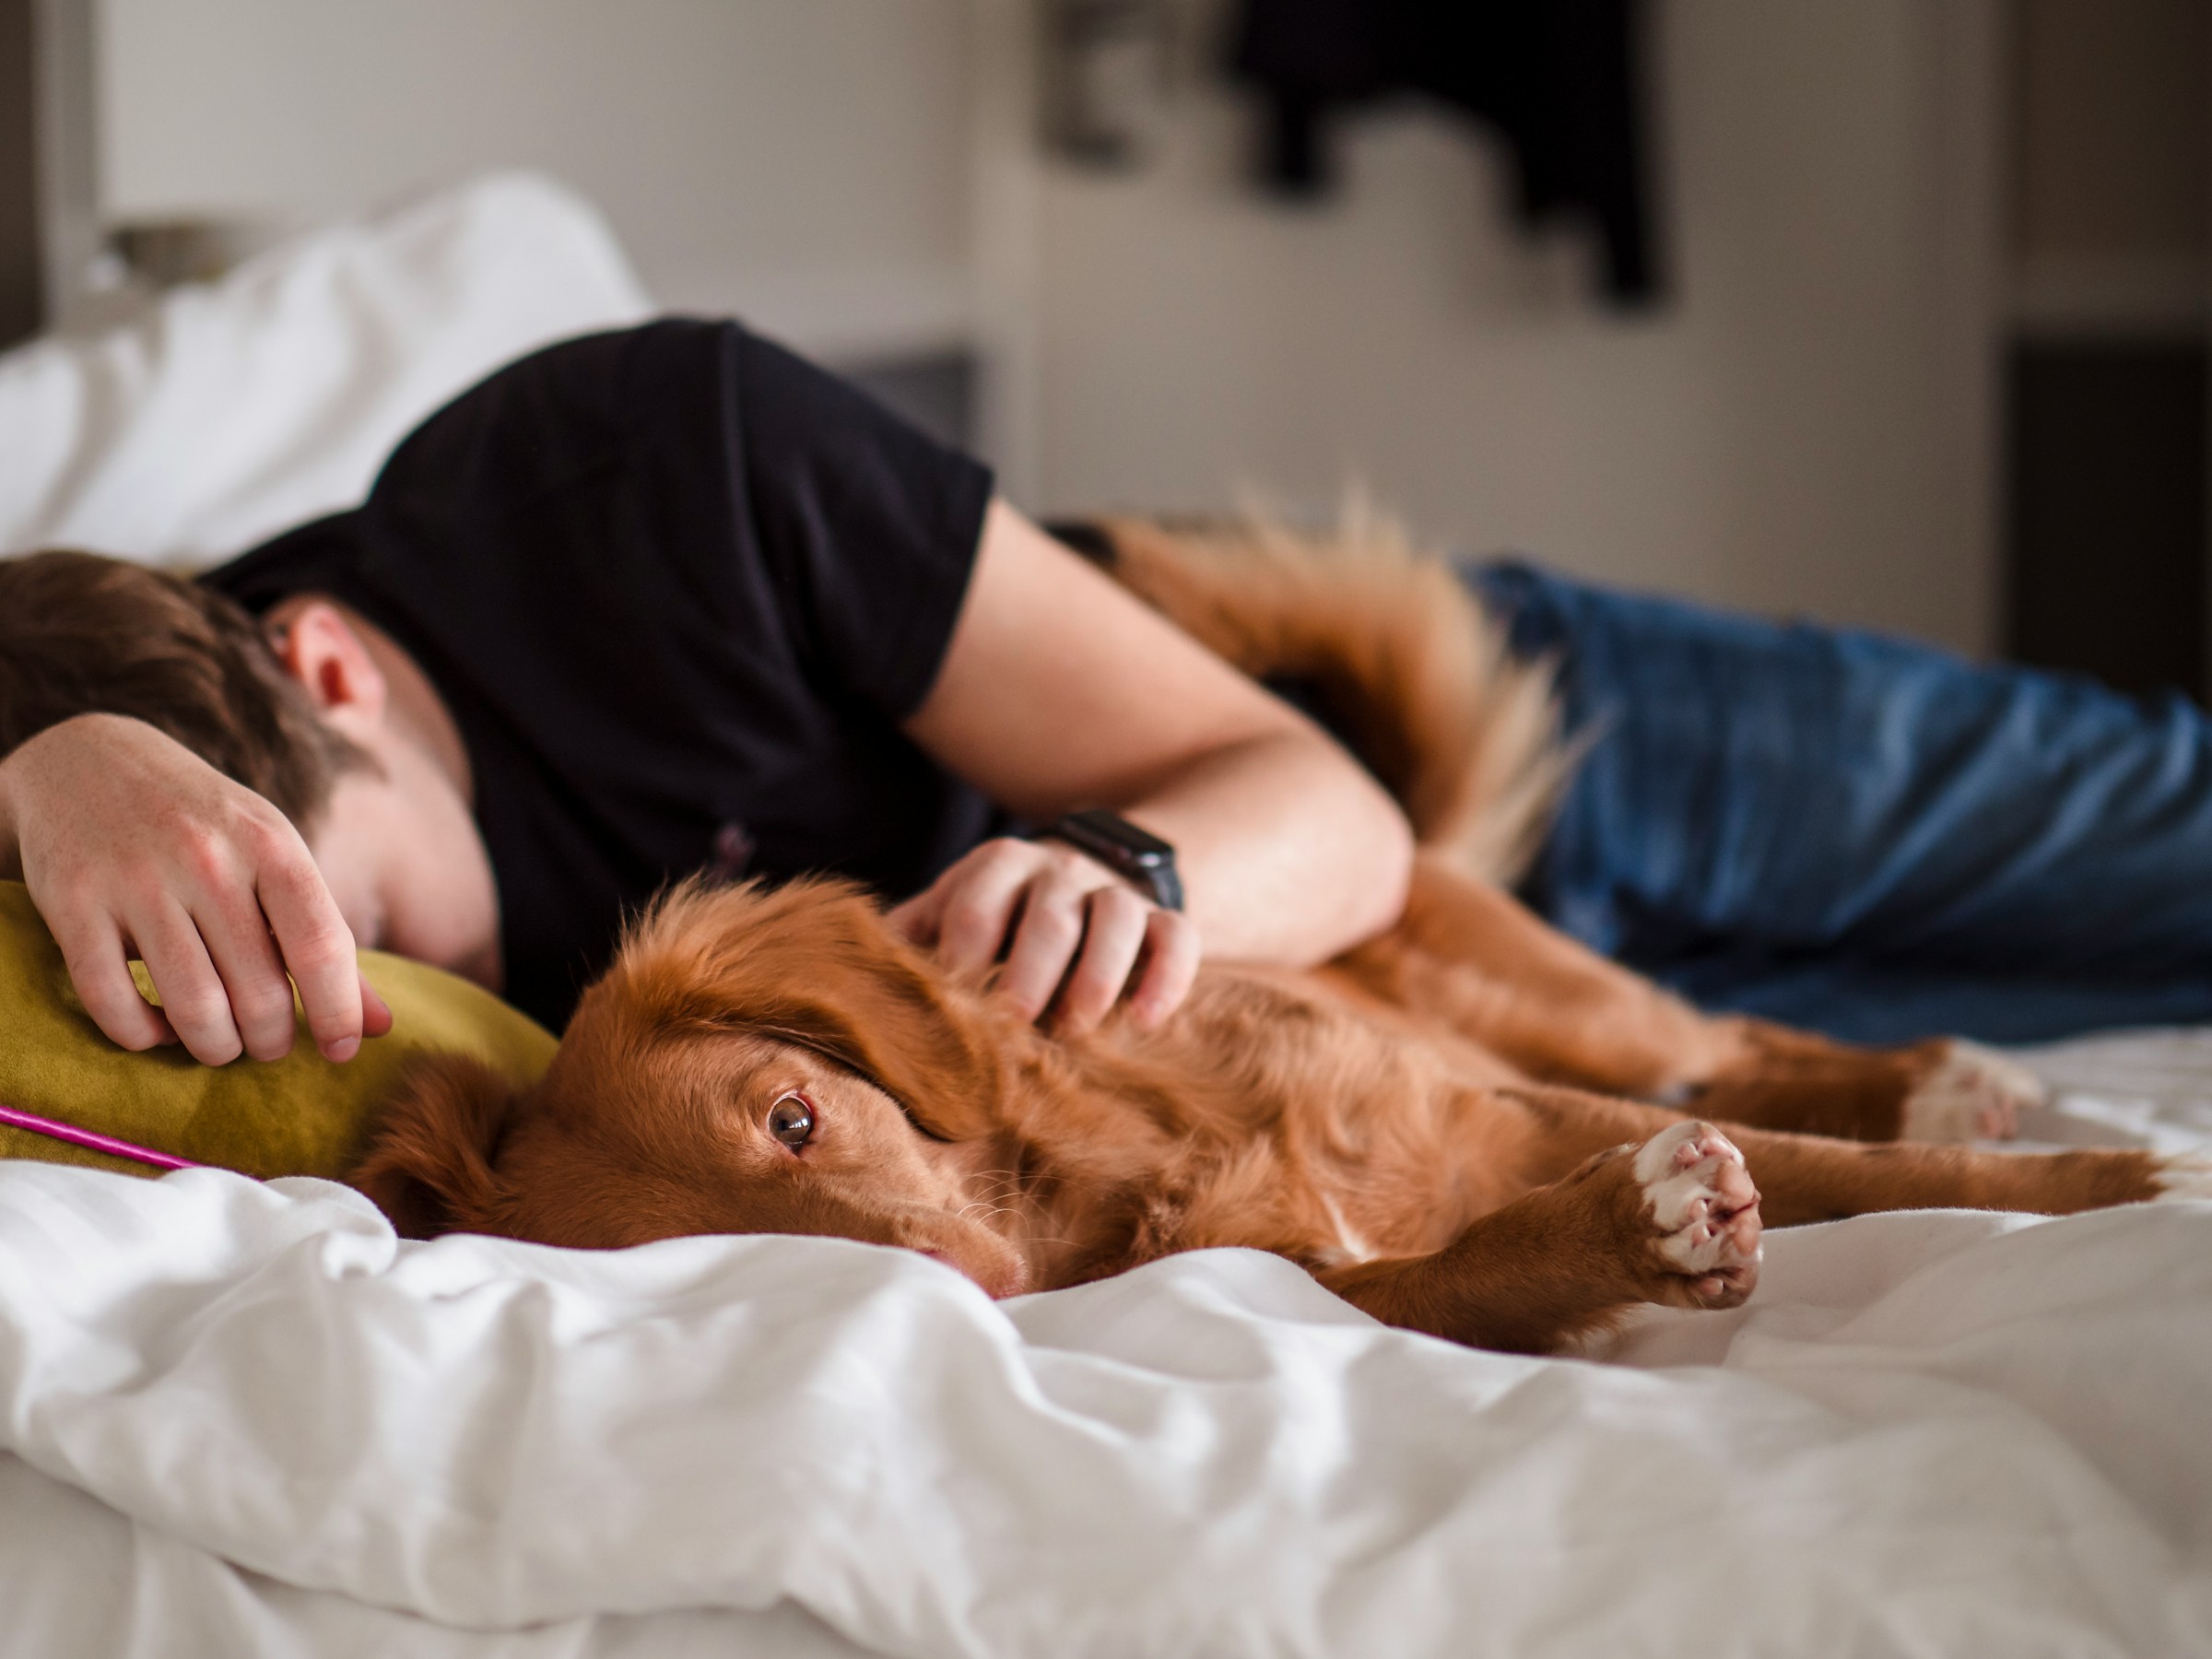 Un hombre durmiendo junto a un perro | Fuente: Unsplash